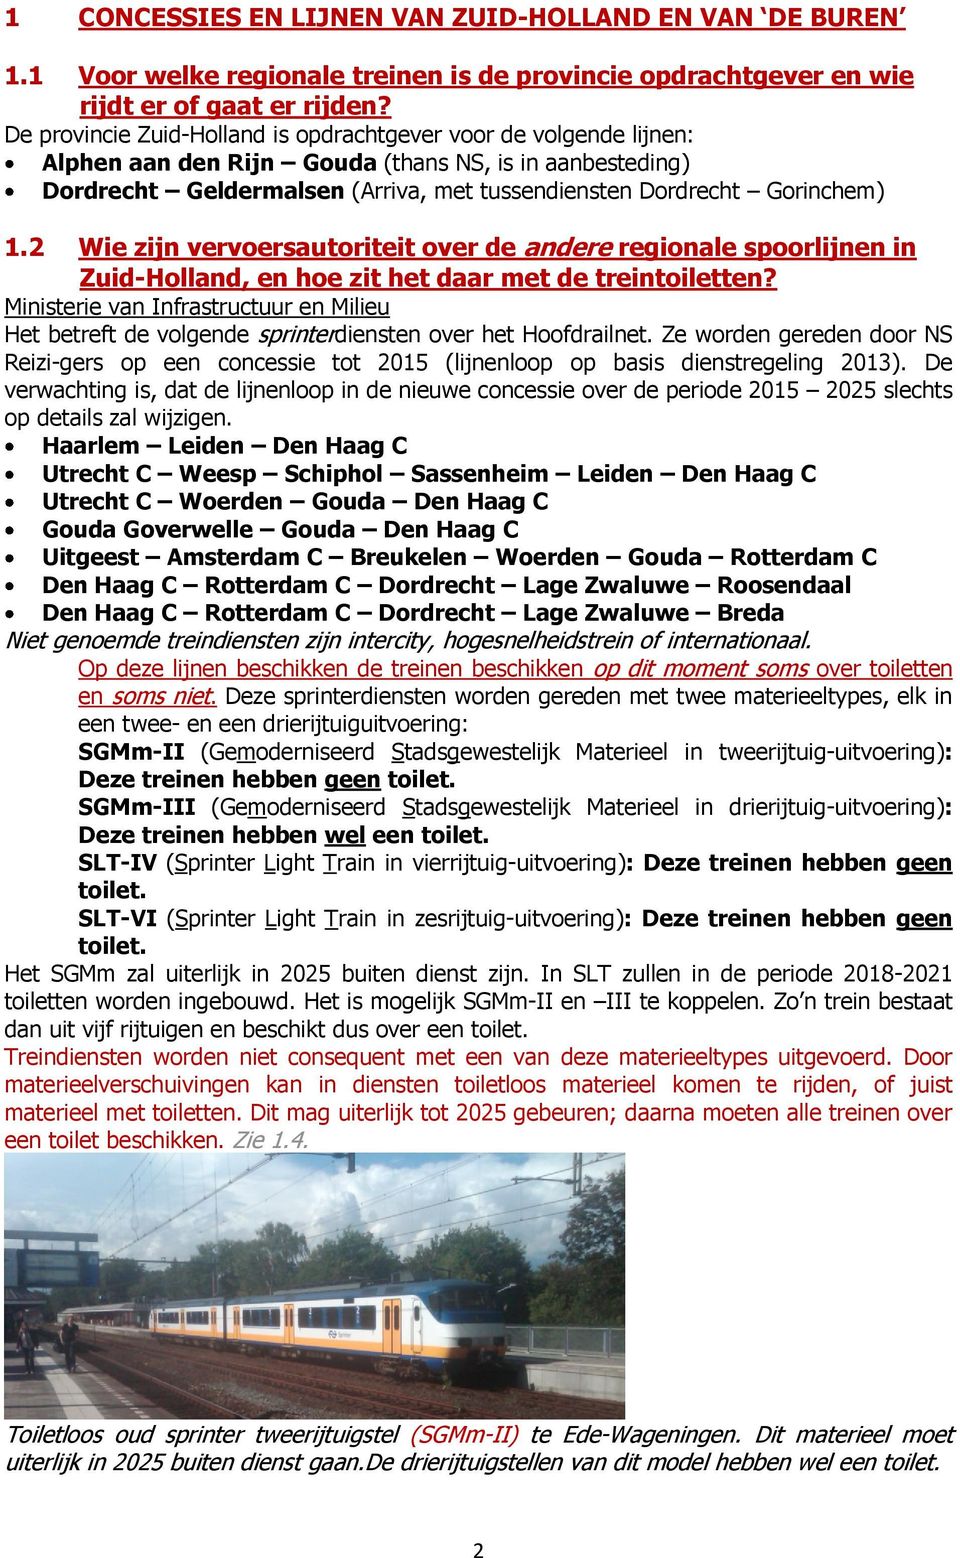 2 Wie zijn vervoersautoriteit over de andere regionale spoorlijnen in Zuid-Holland, en hoe zit het daar met de treintoiletten?